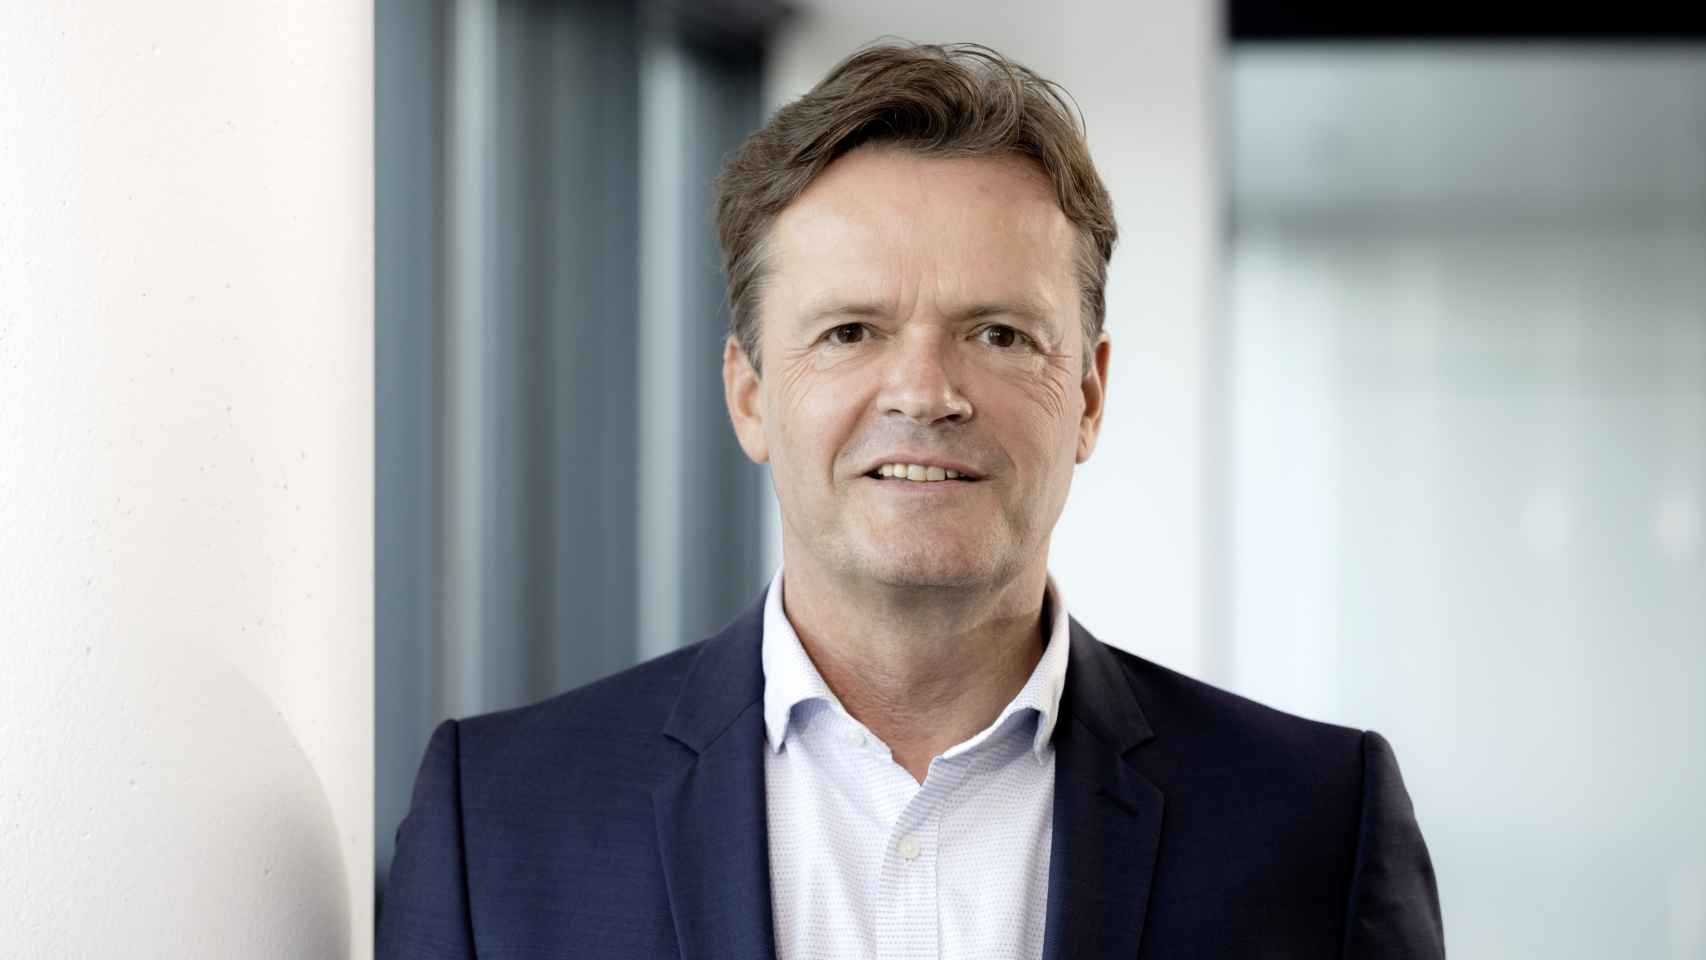 Markus Schäfer es responsable del proceso de desarrollo integral de Mercedes-Benz.